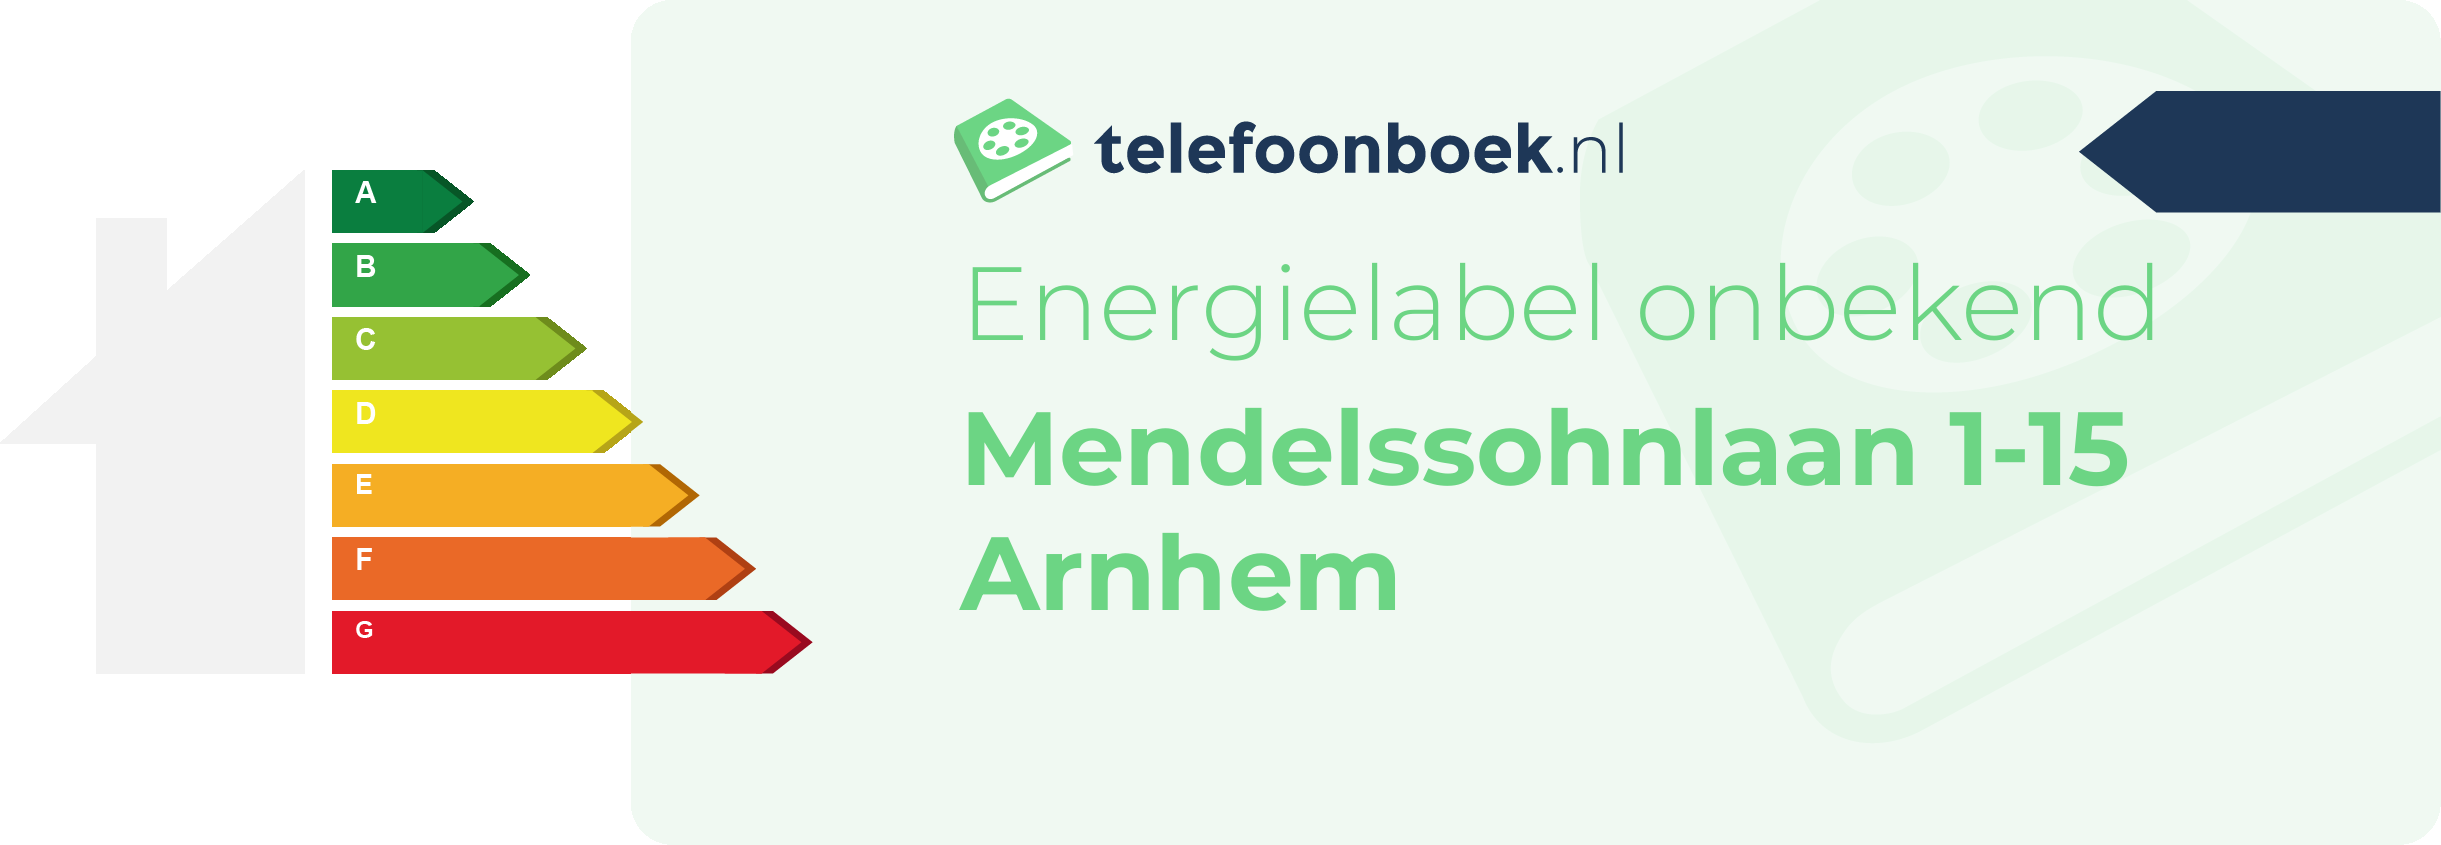 Energielabel Mendelssohnlaan 1-15 Arnhem